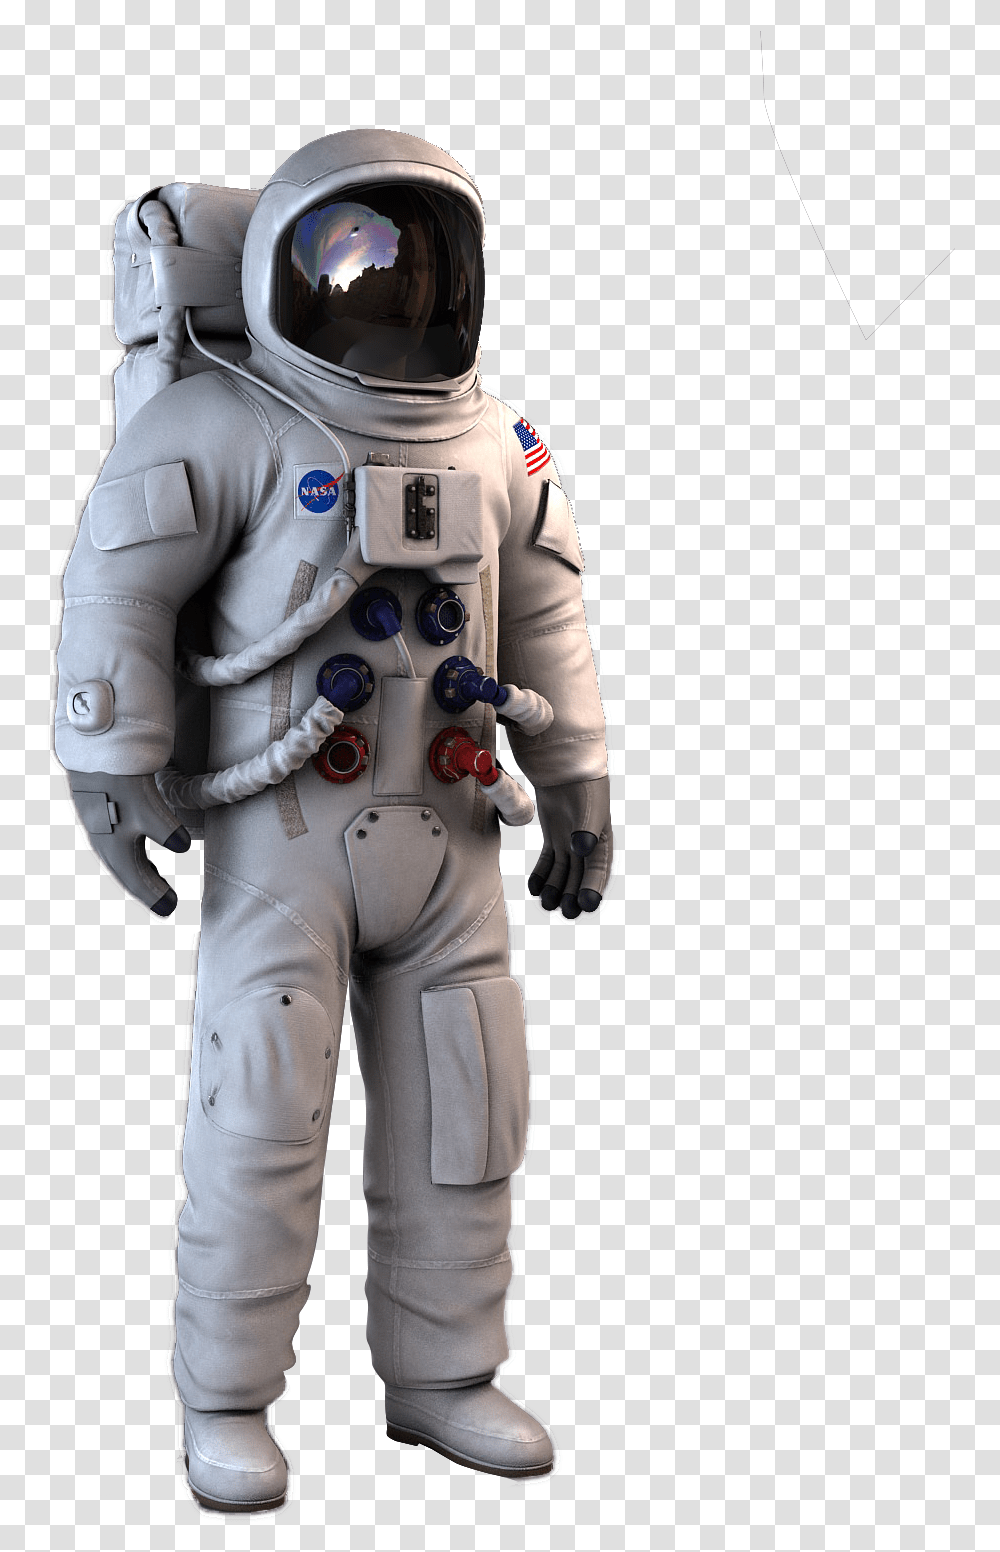 Nasa Astronaut Spacesuit 3 D White Protective Spacesuit Sokol Space Suit, Person, Human, Helmet, Clothing Transparent Png